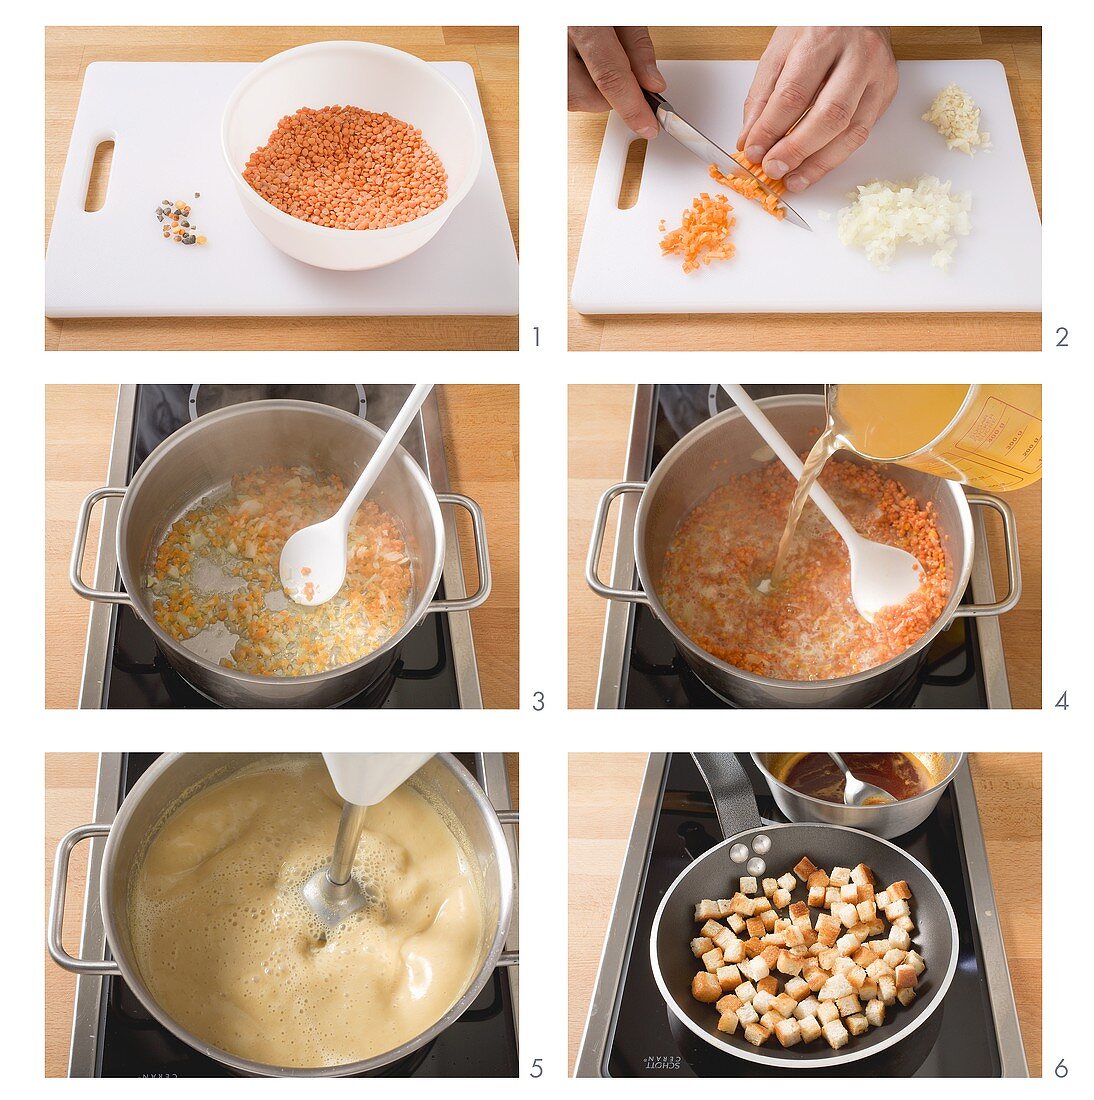 Making red lentil soup